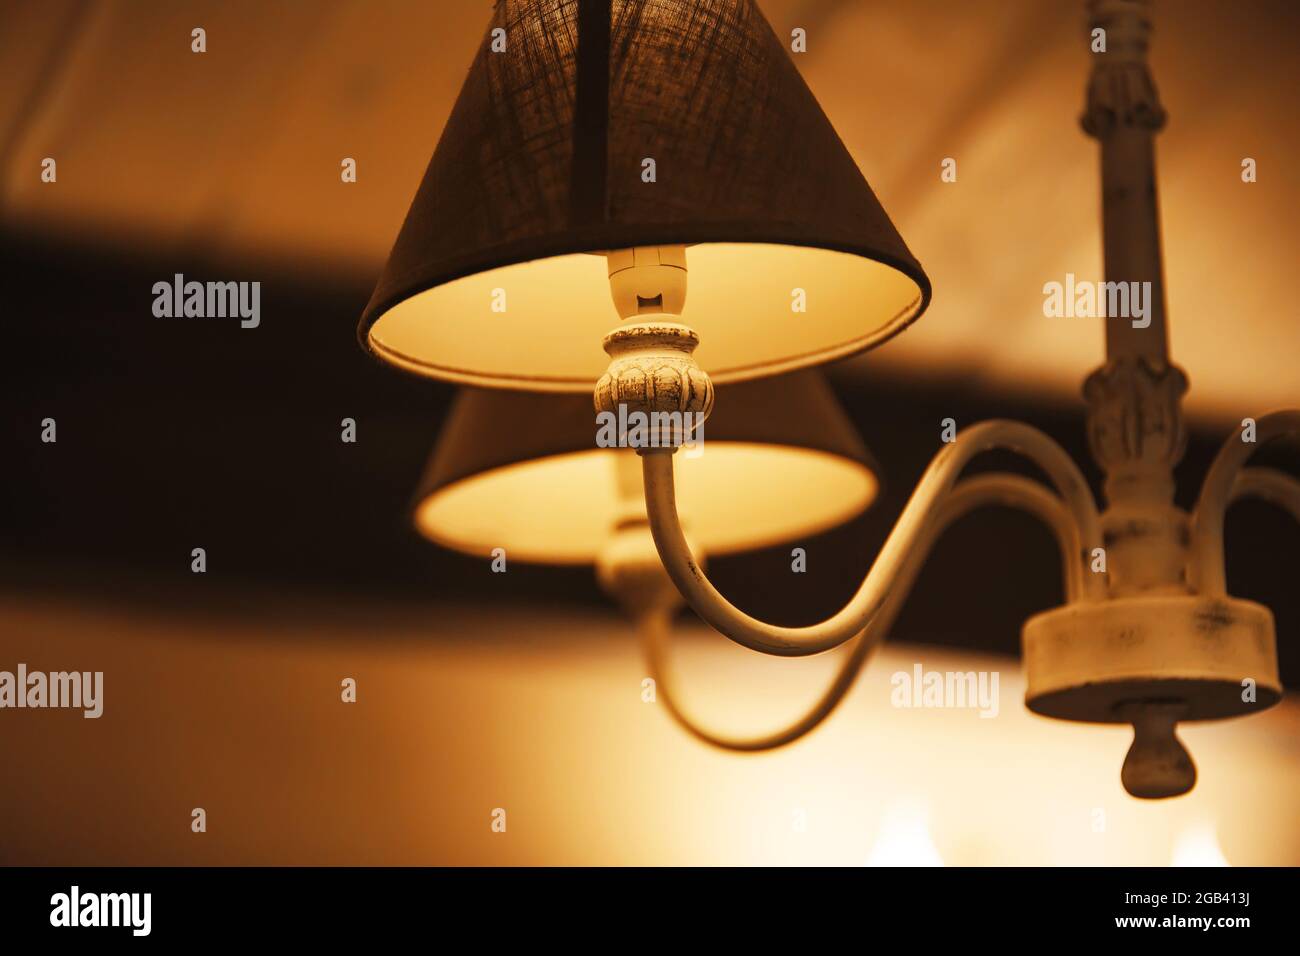 Una hermosa y elegante lámpara de araña con cortinas de tela cuelga en la habitación y brilla con luz cálida por la noche, creando un ambiente acogedor. Un motel. Foto de stock